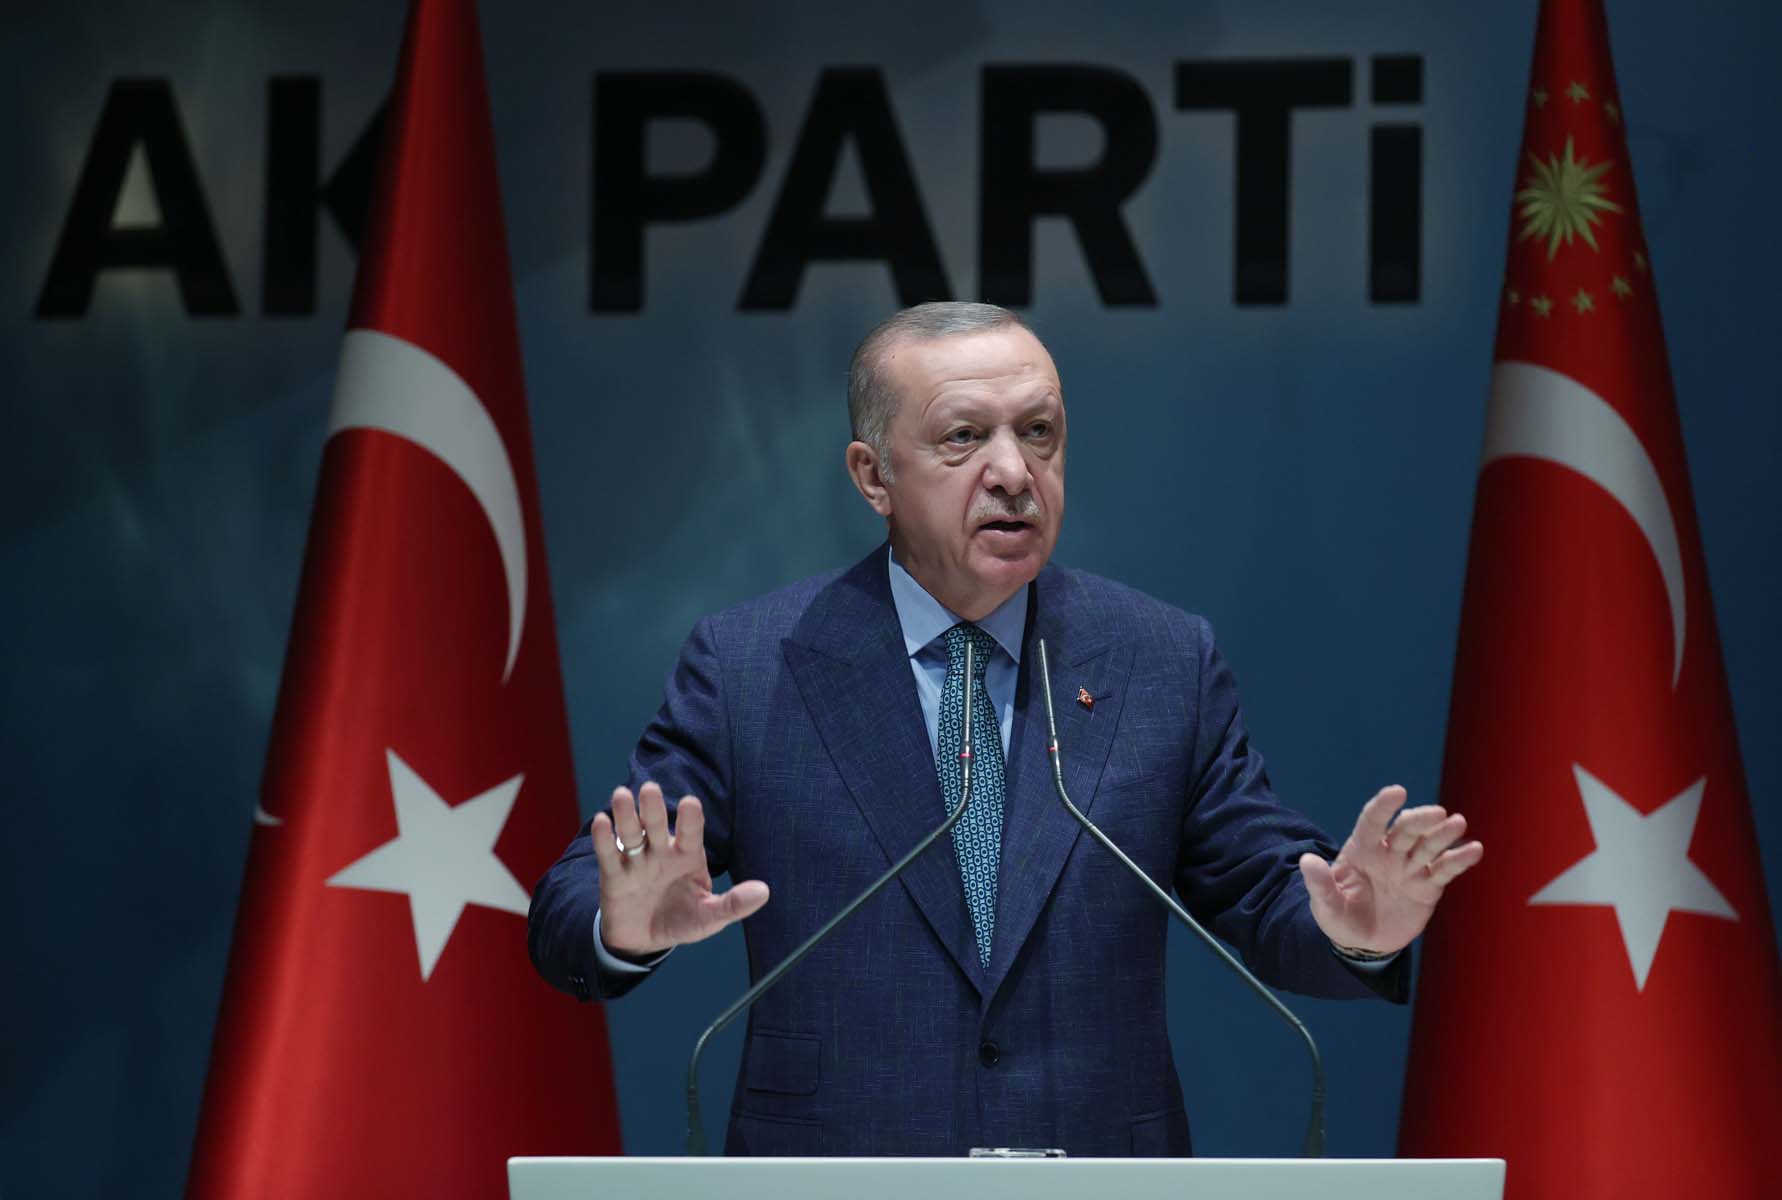 Son dakika | Cumhurbaşkanı Erdoğan'dan cuma namazı çıkışı önemli açıklamalar! ABD’nin bu yanlışını kabul edemeyiz